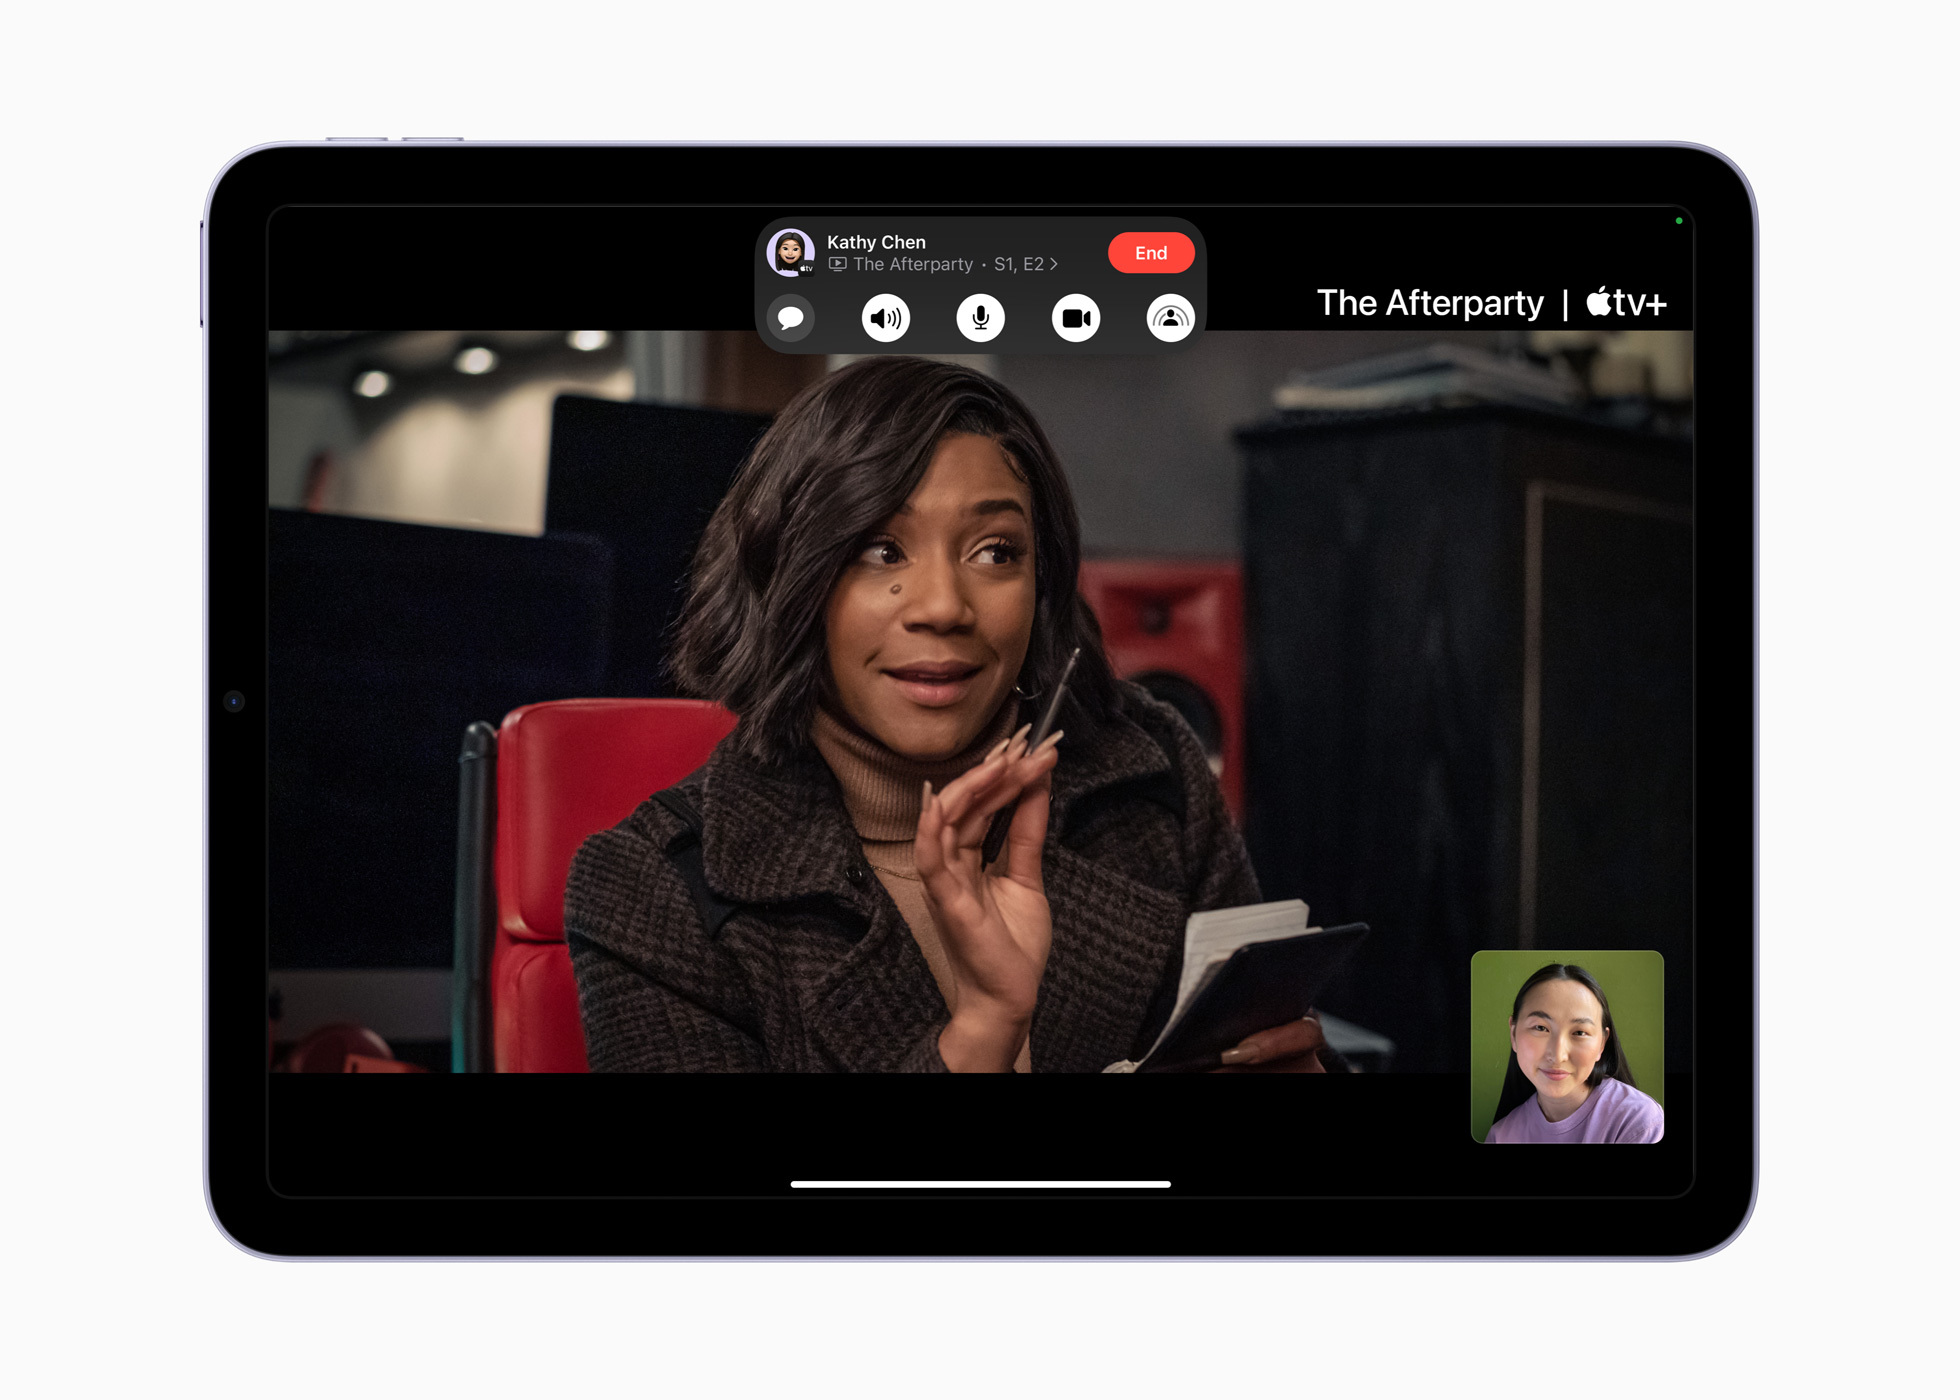 全新 1,200 萬像素超廣角前置相機支援「人物居中」功能，讓 iPad Air 上的視訊會議體驗變得更自然且有參與感。